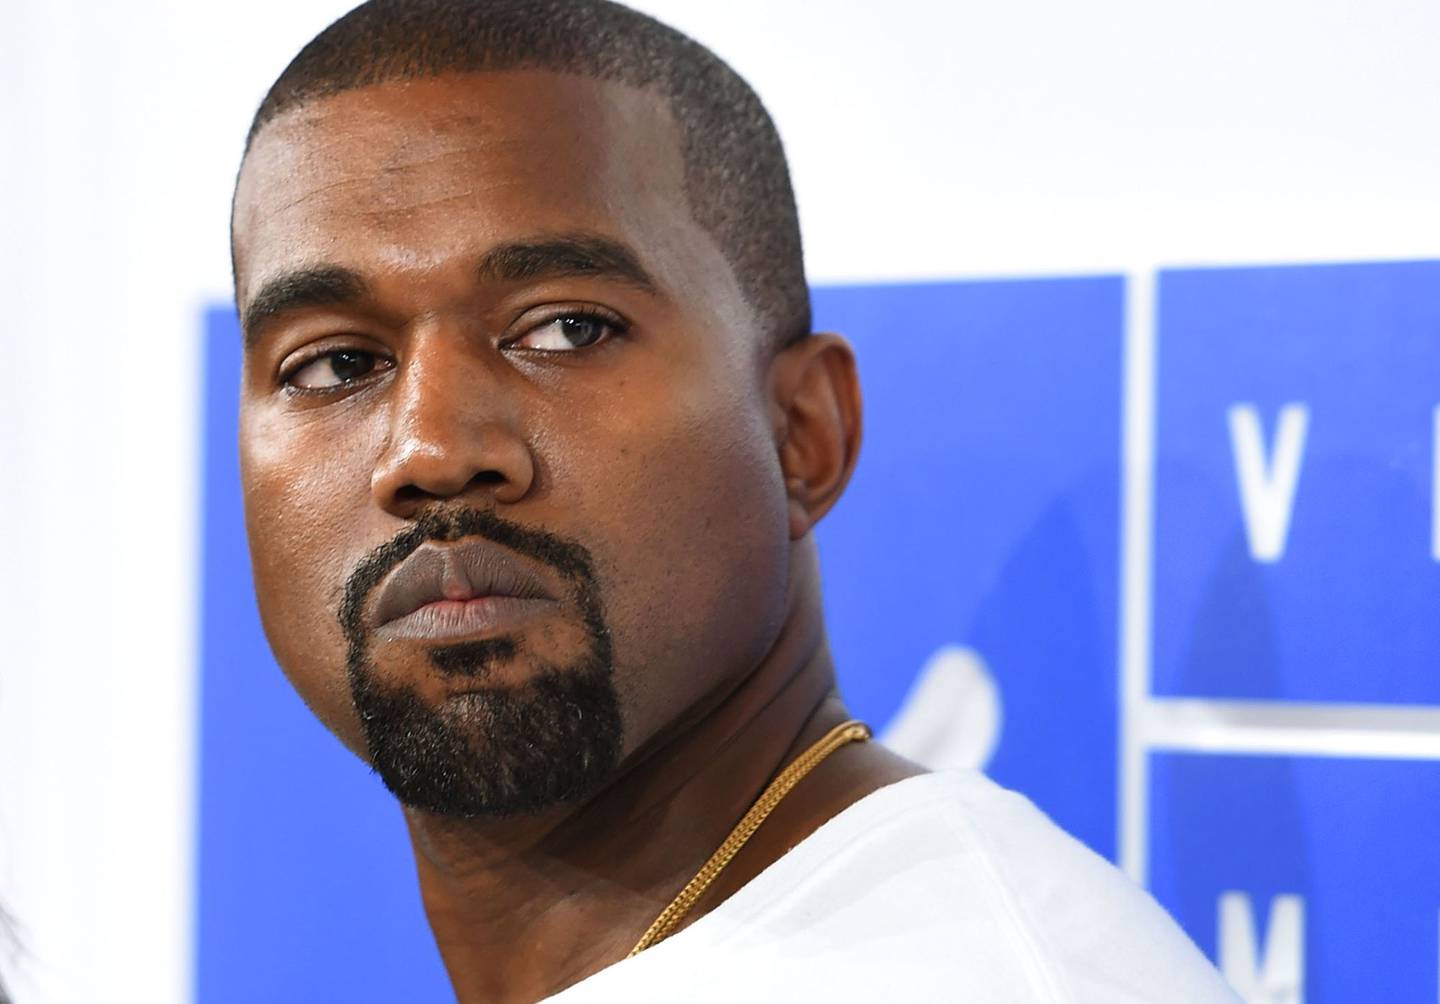 Gap retira produtos da marca de Kanye West das lojas após comentários